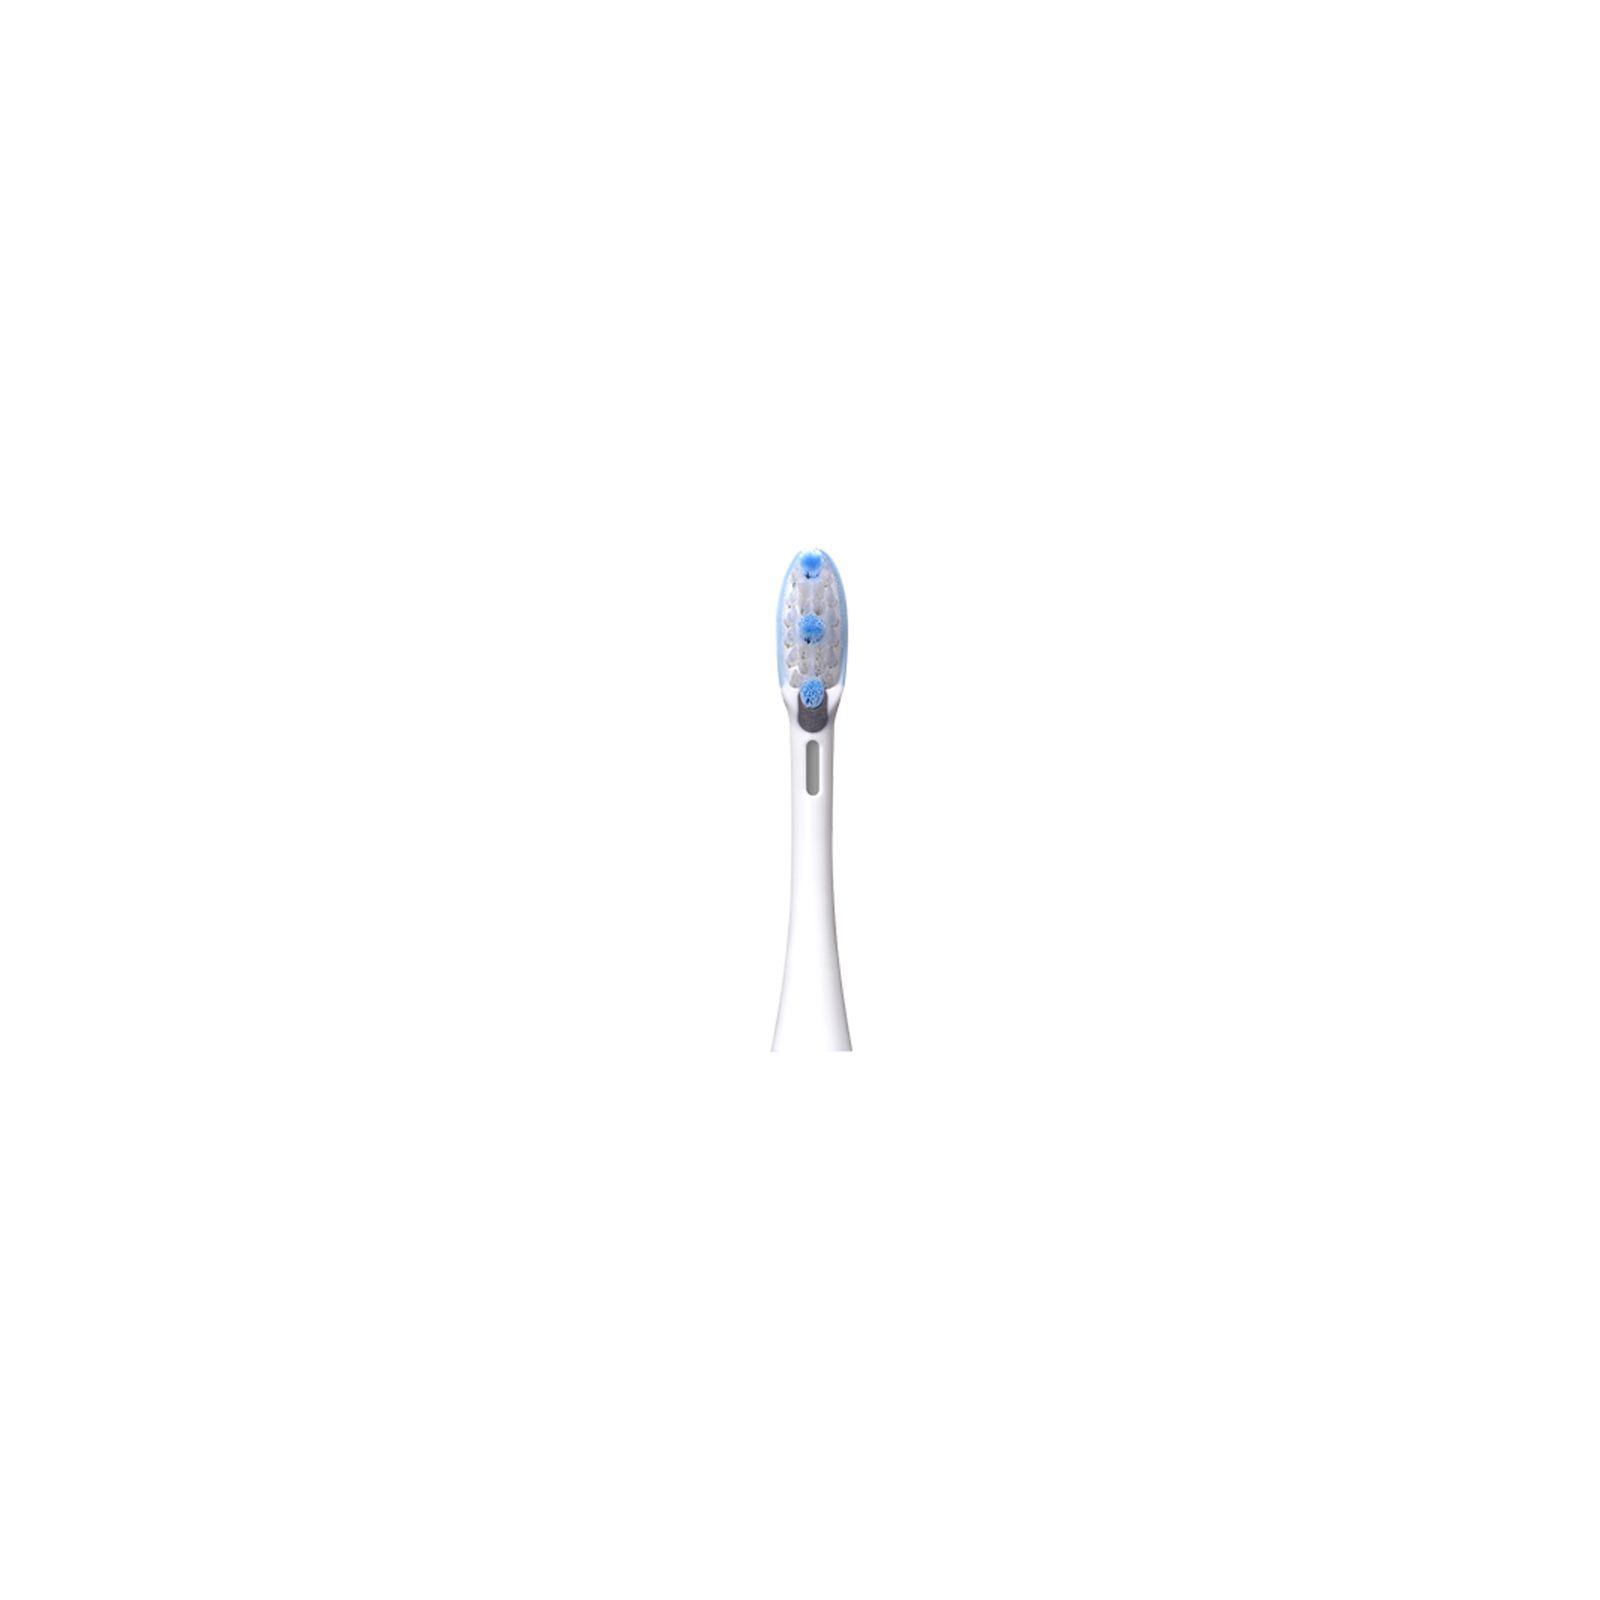 Электрическая зубная щетка Panasonic EW-DE92-S820 изображение 6